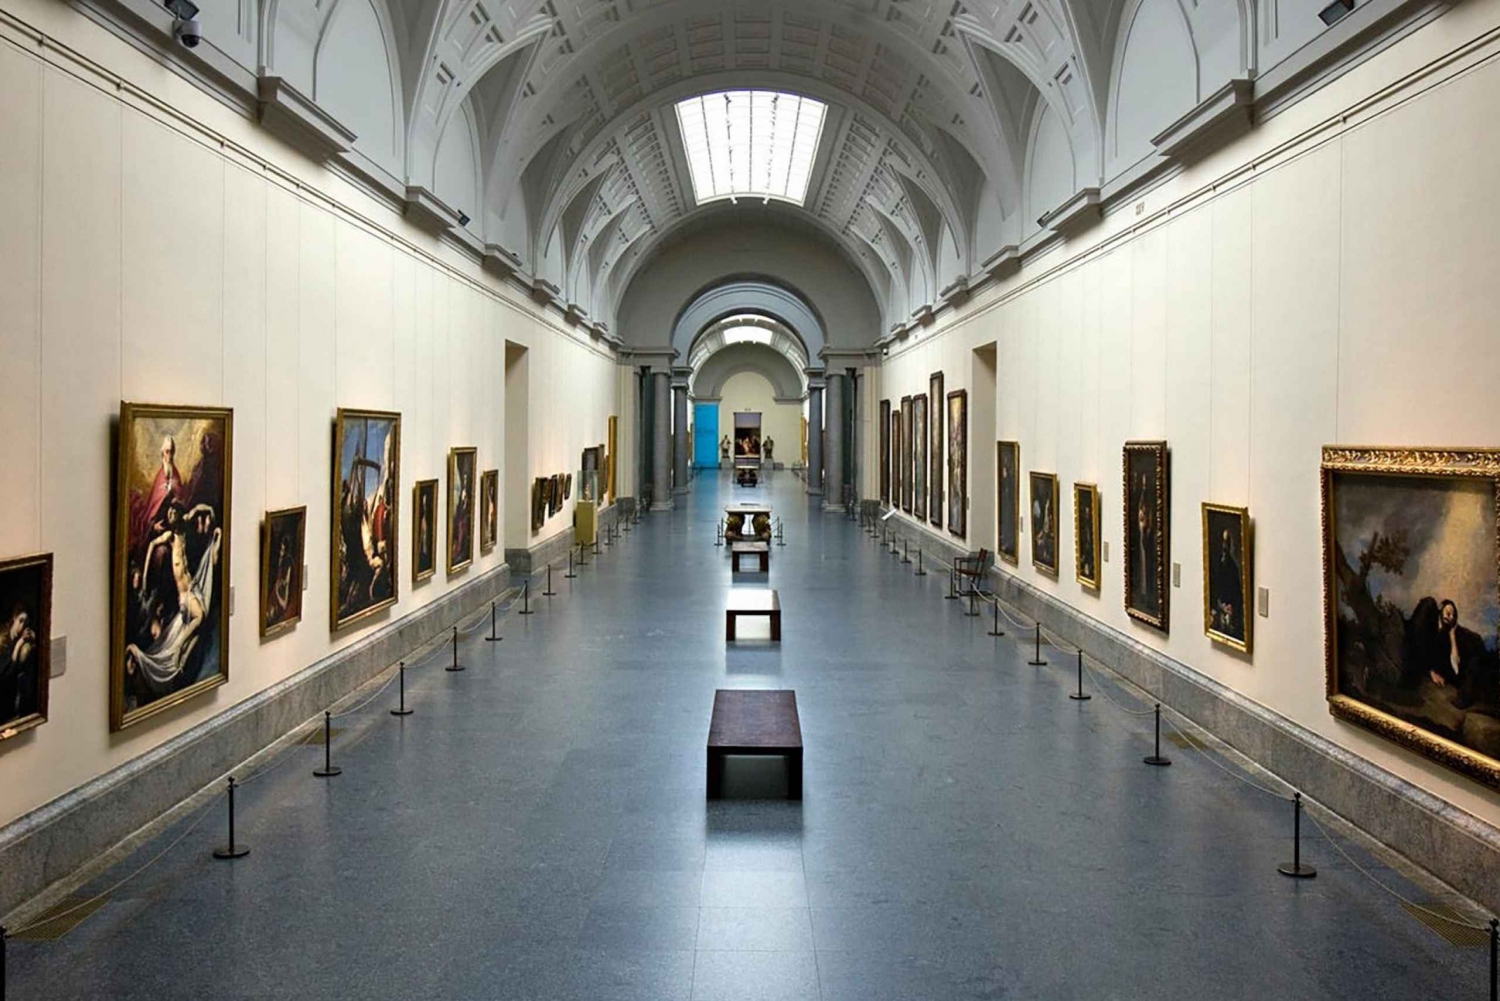 Obras-primas reveladas: Descoberta do Museu do Prado